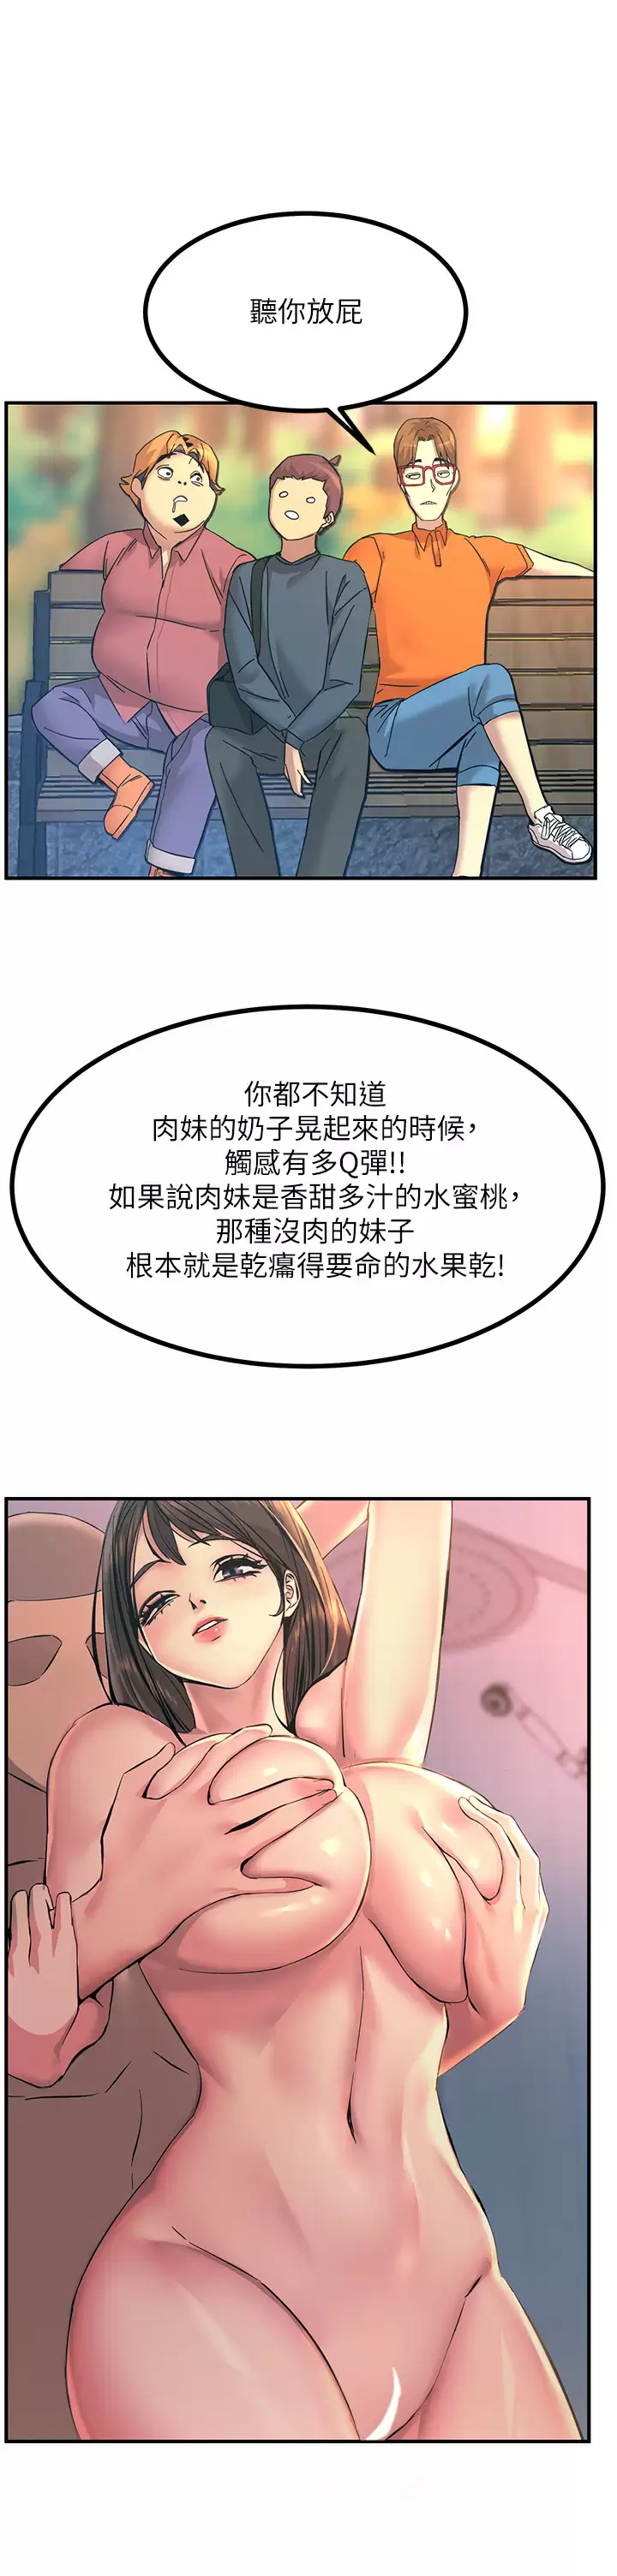 韩国污漫画 觸電大師 第11话 确认好友的兴奋指数 42